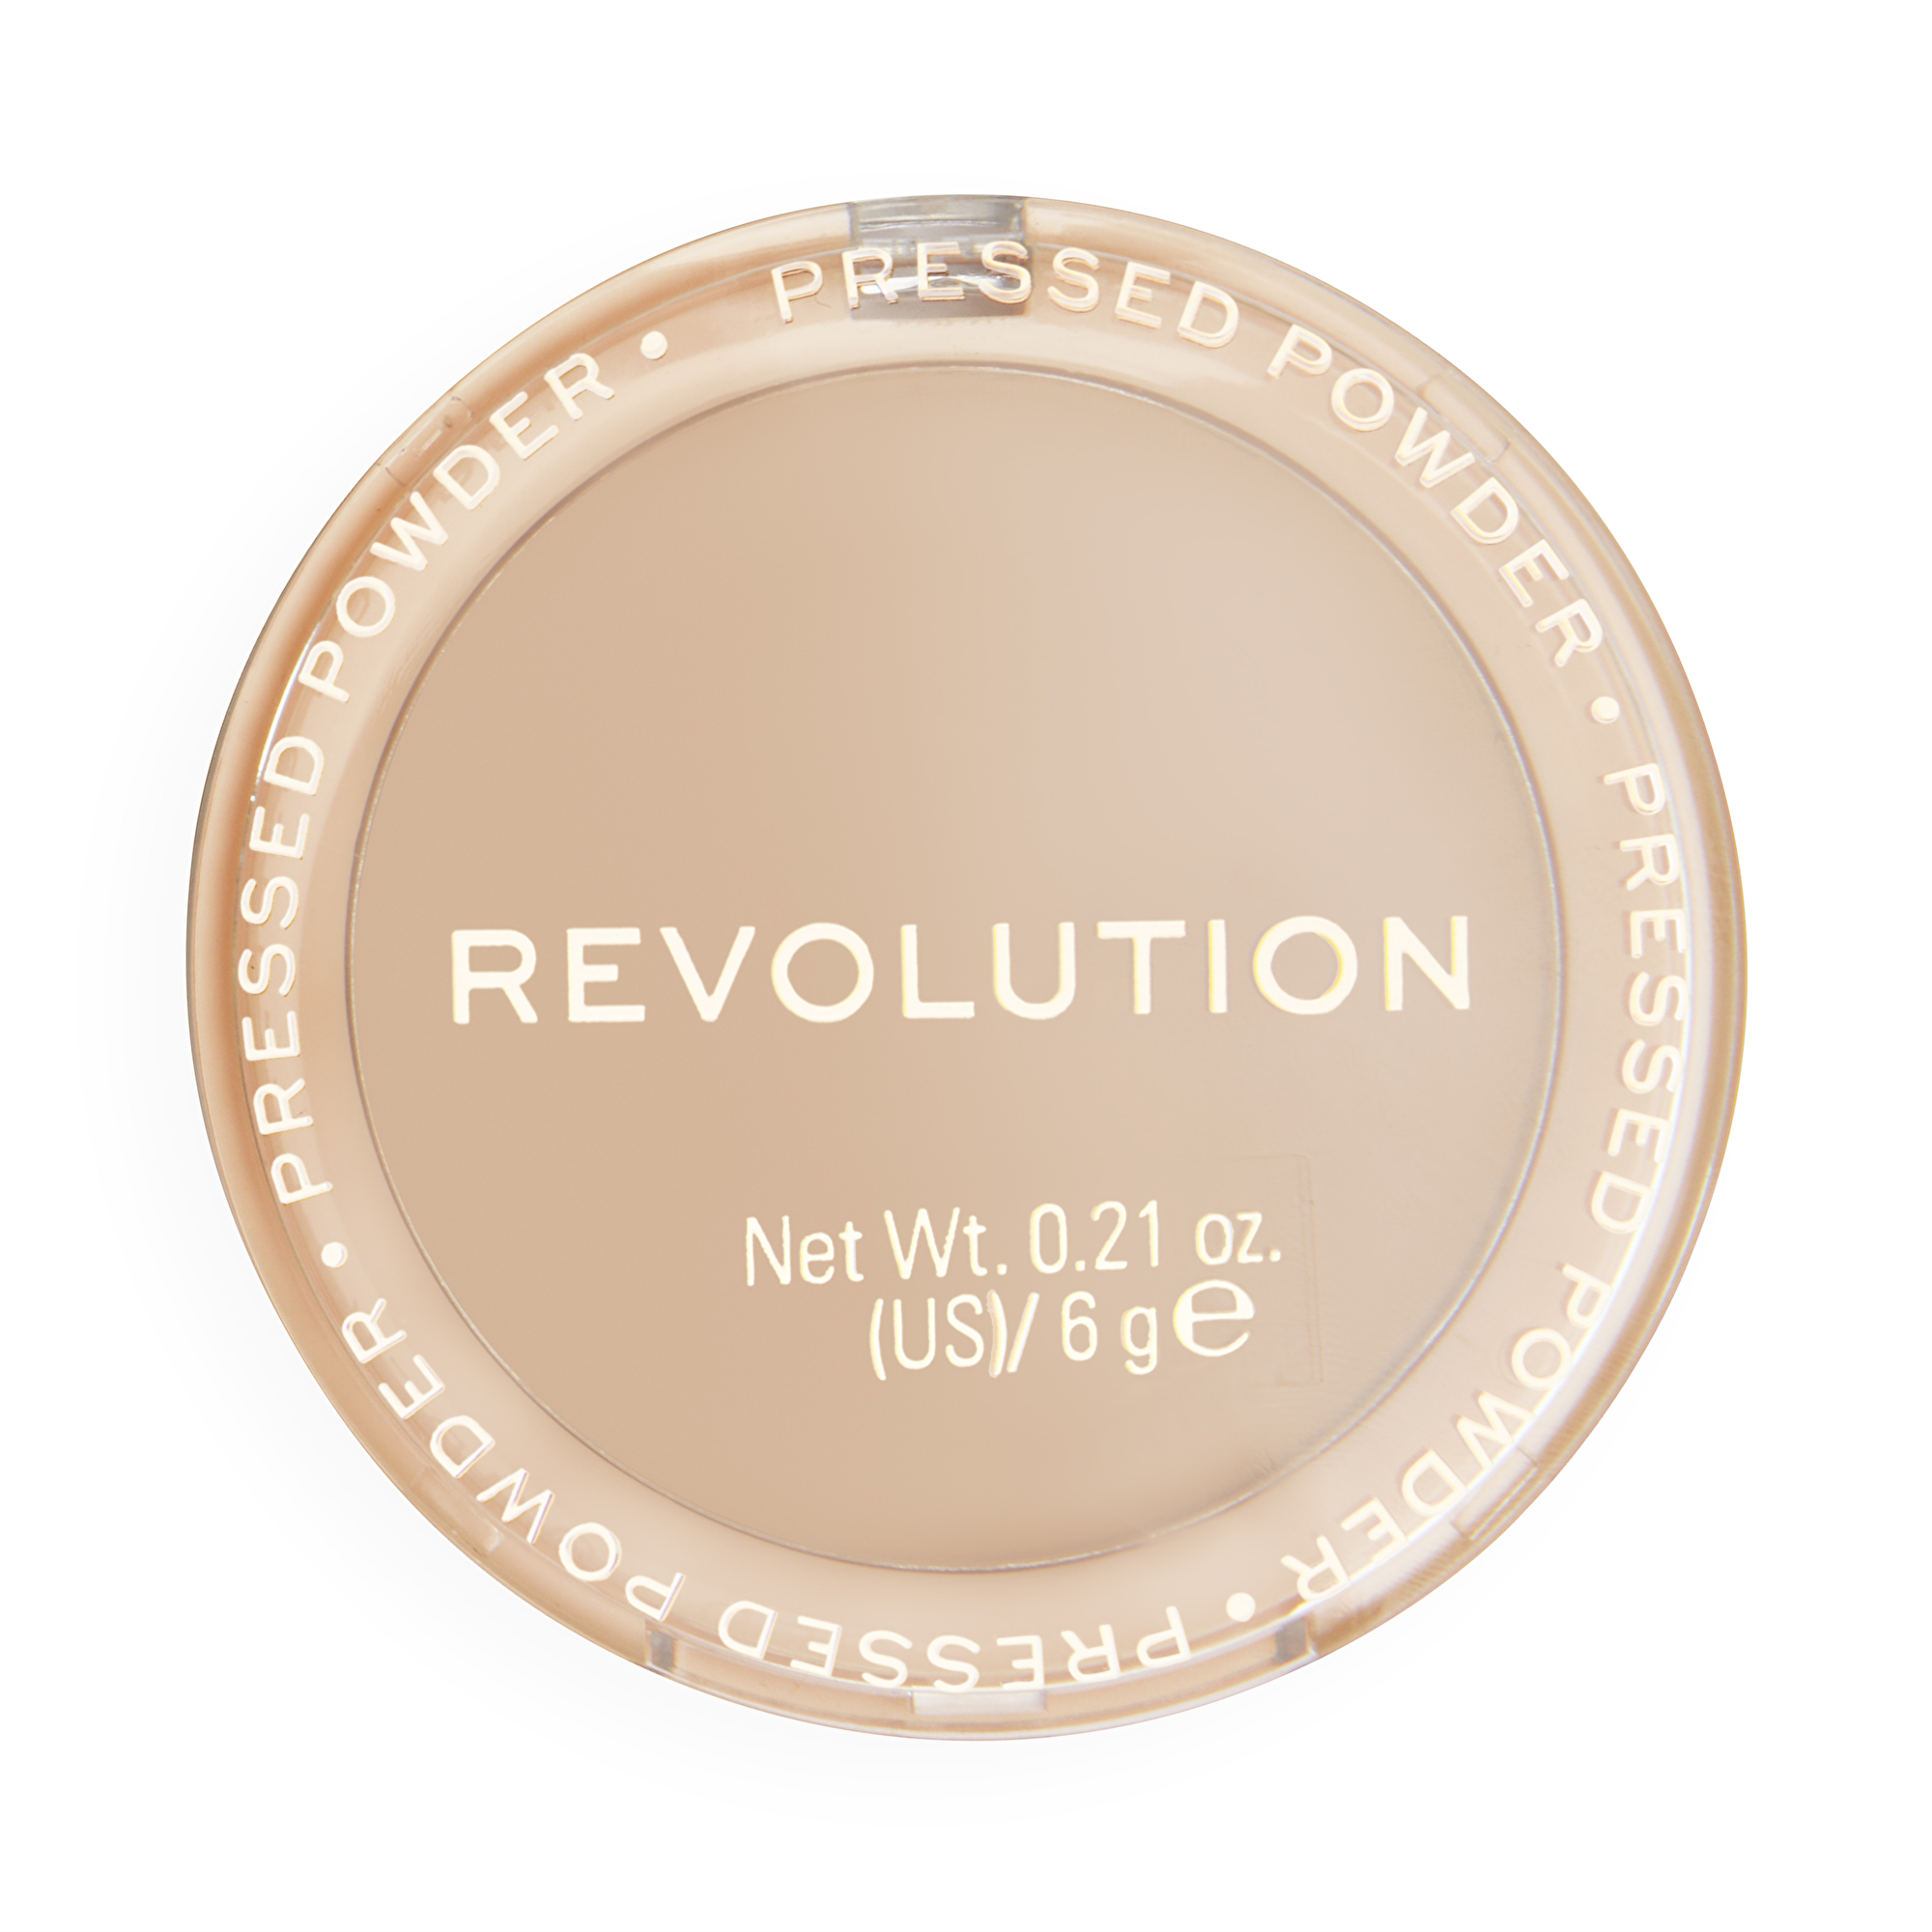 Revolution Pudr Reloaded (Pressed Powder) 6 g Translucent